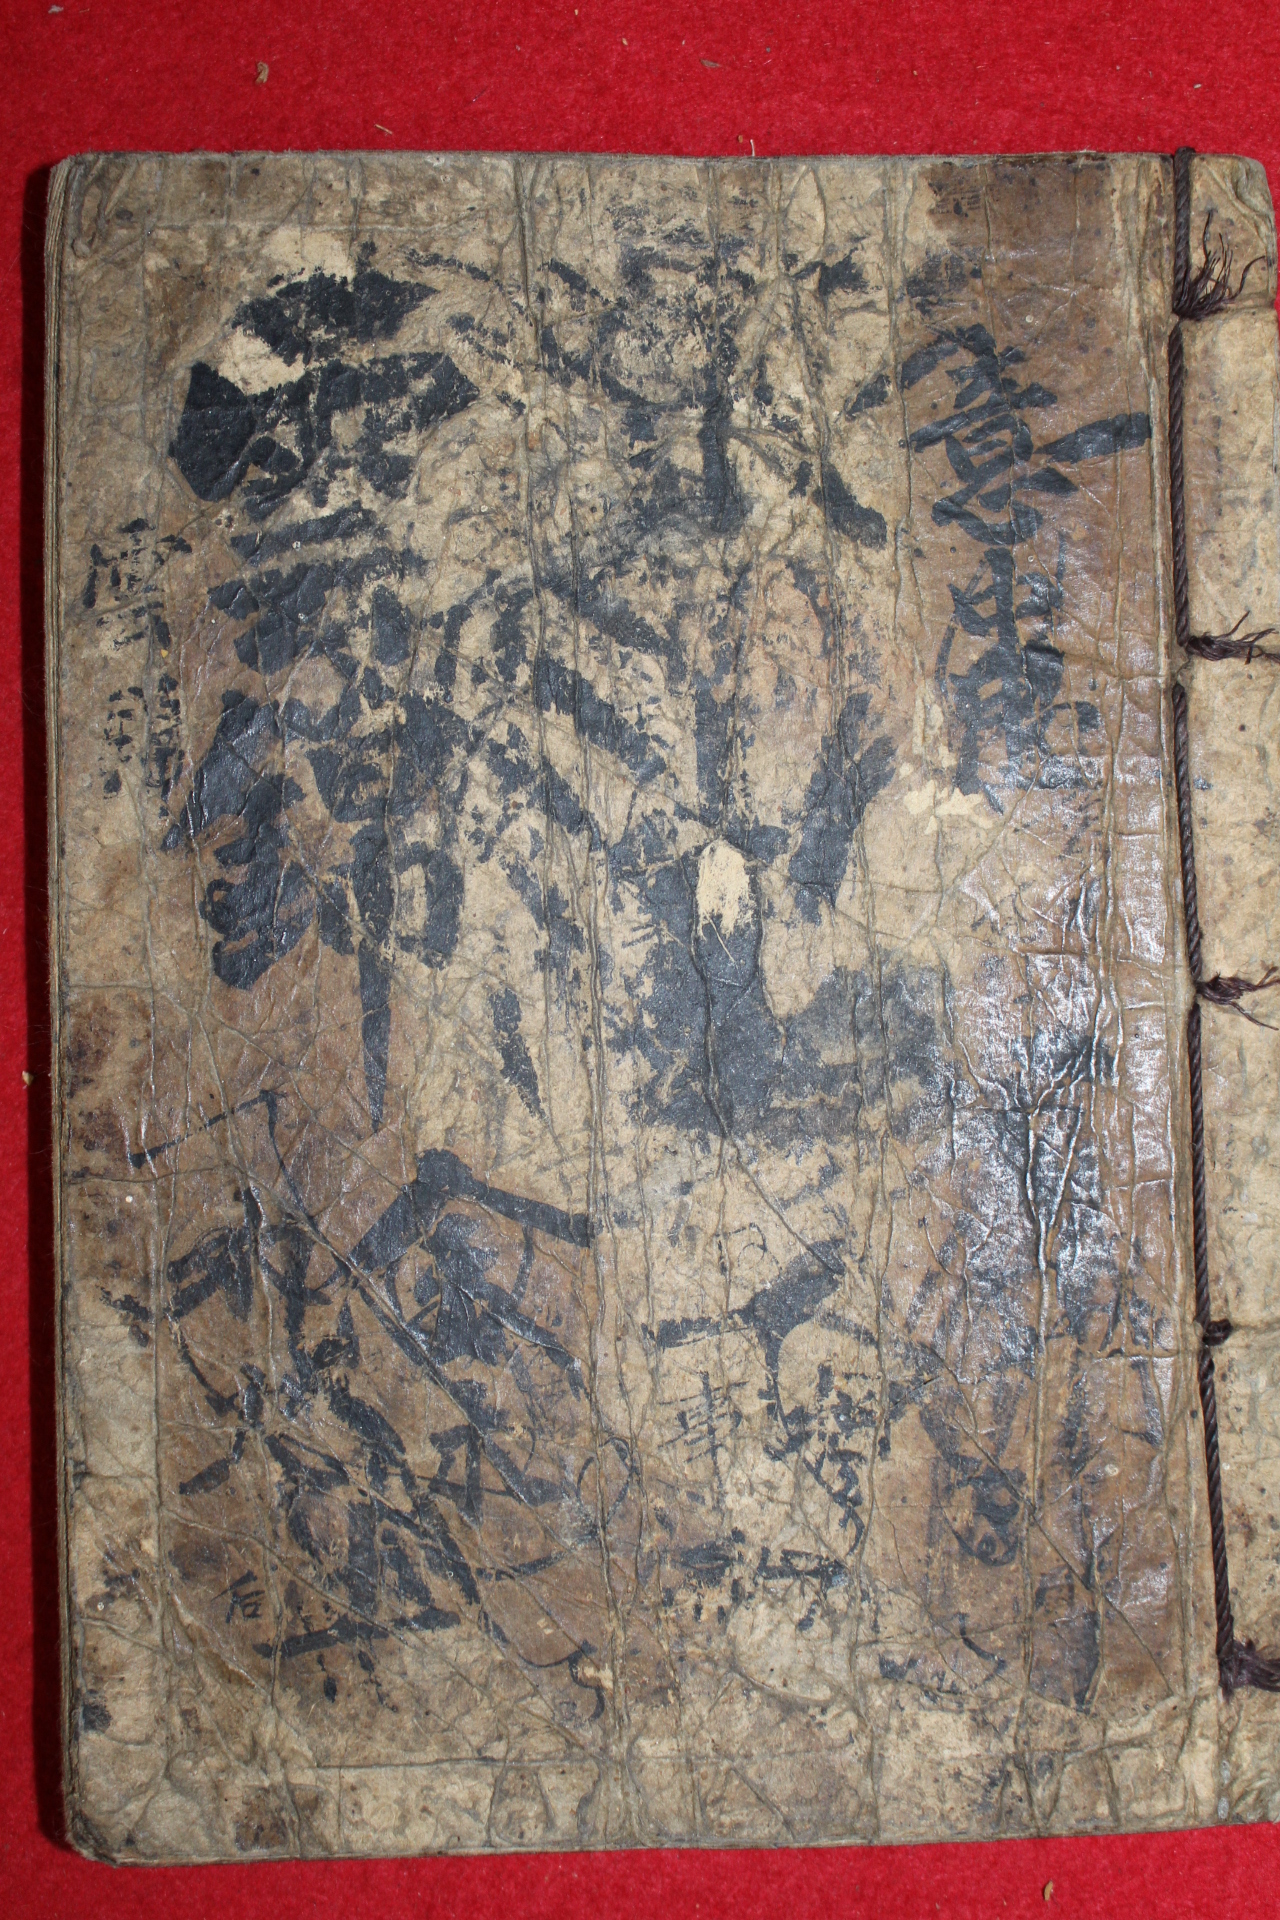 조선시대 잘정서된 고필사본 시집 운금(雲錦)